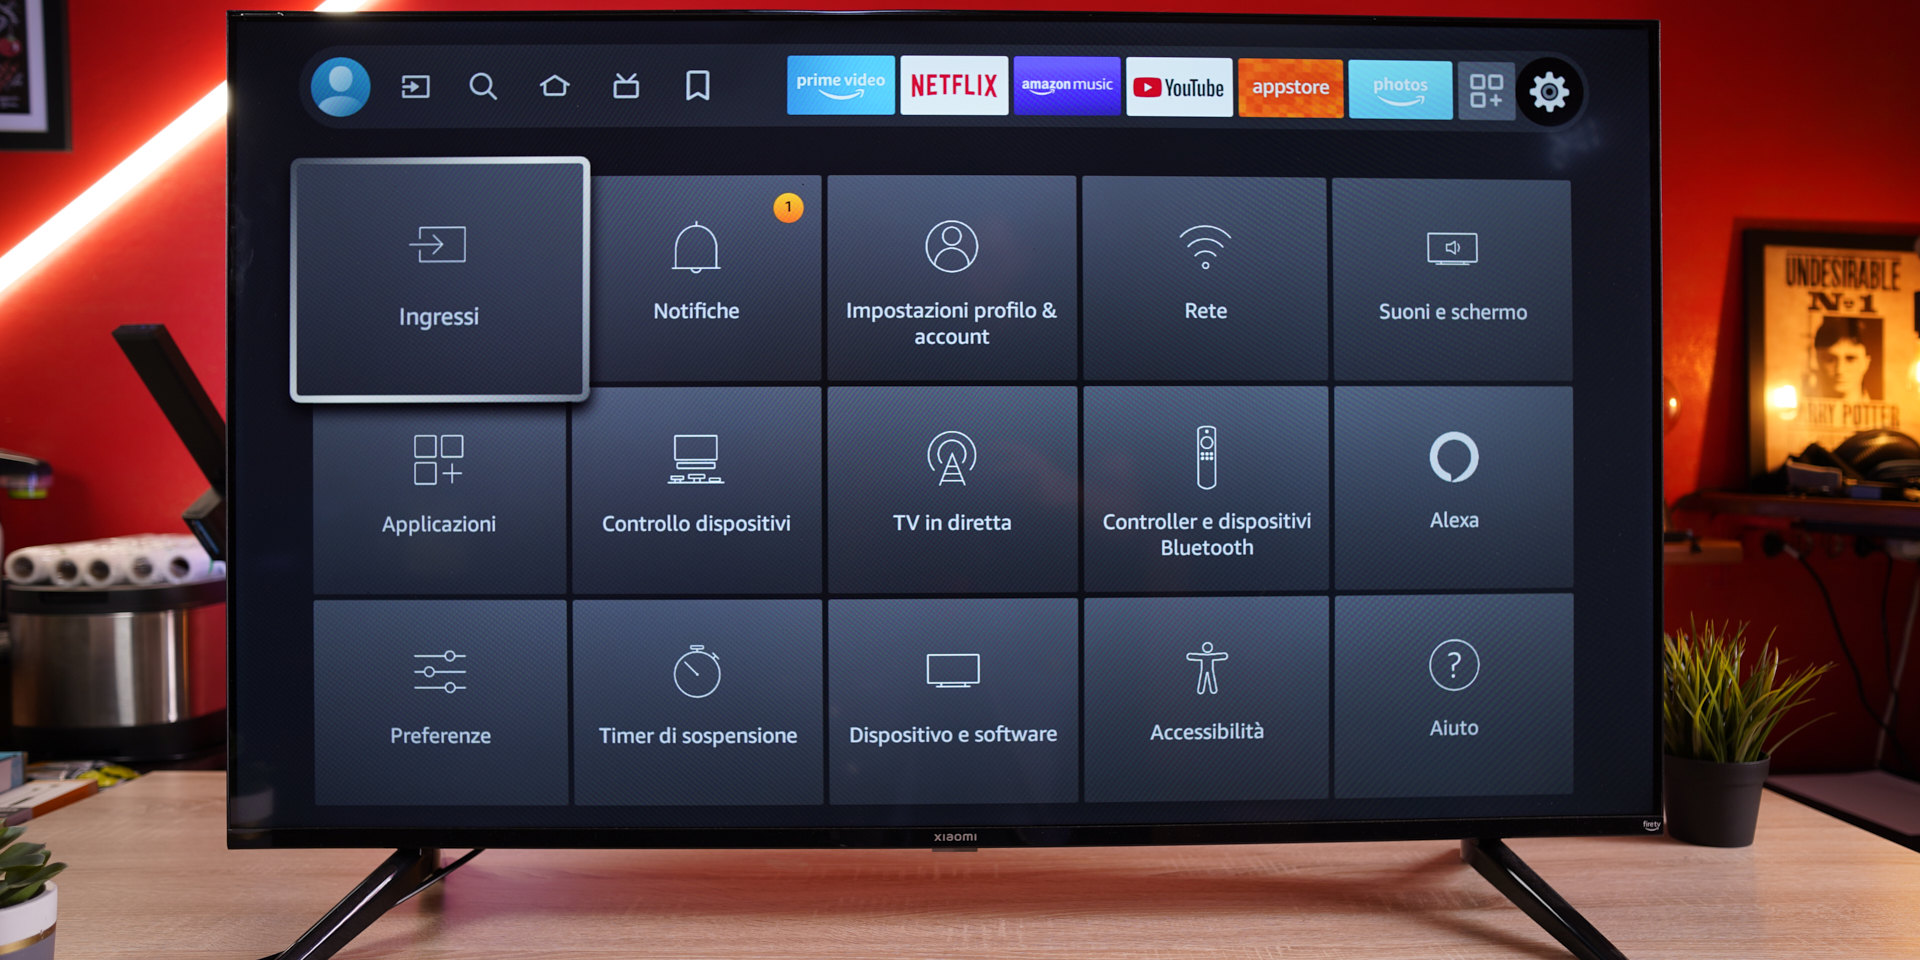 
                                    
                                La prima TV Xiaomi con FireTV integrata